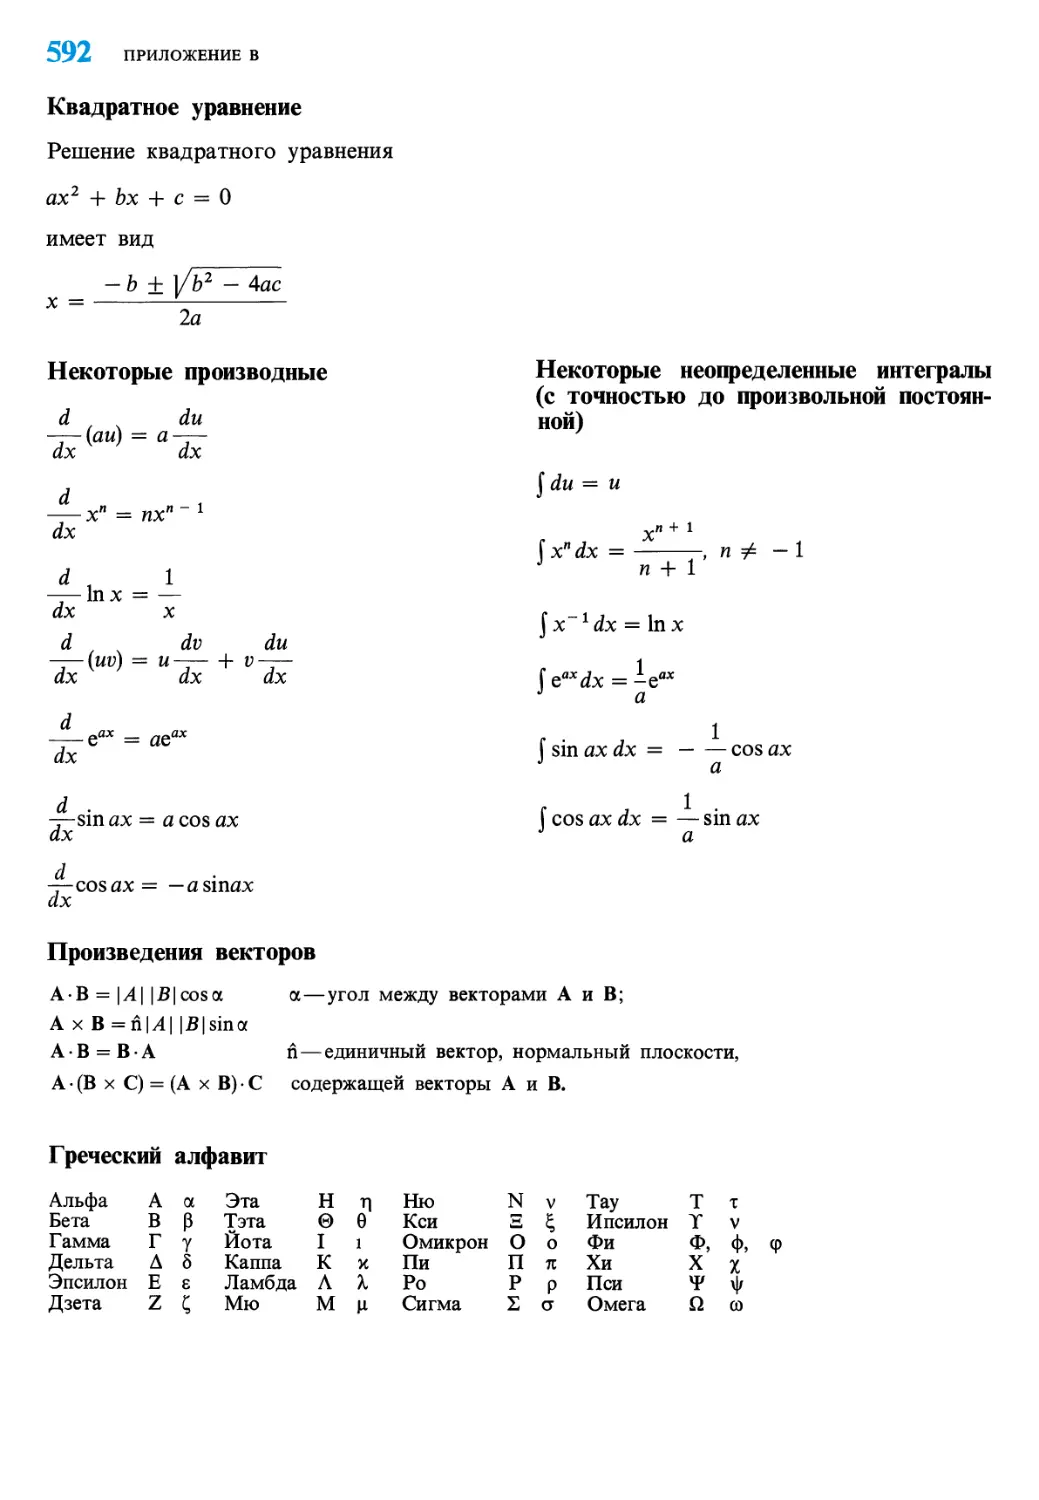 Квадратное уравнение
Некоторые производные
Произведения векторов
Греческий алфавит